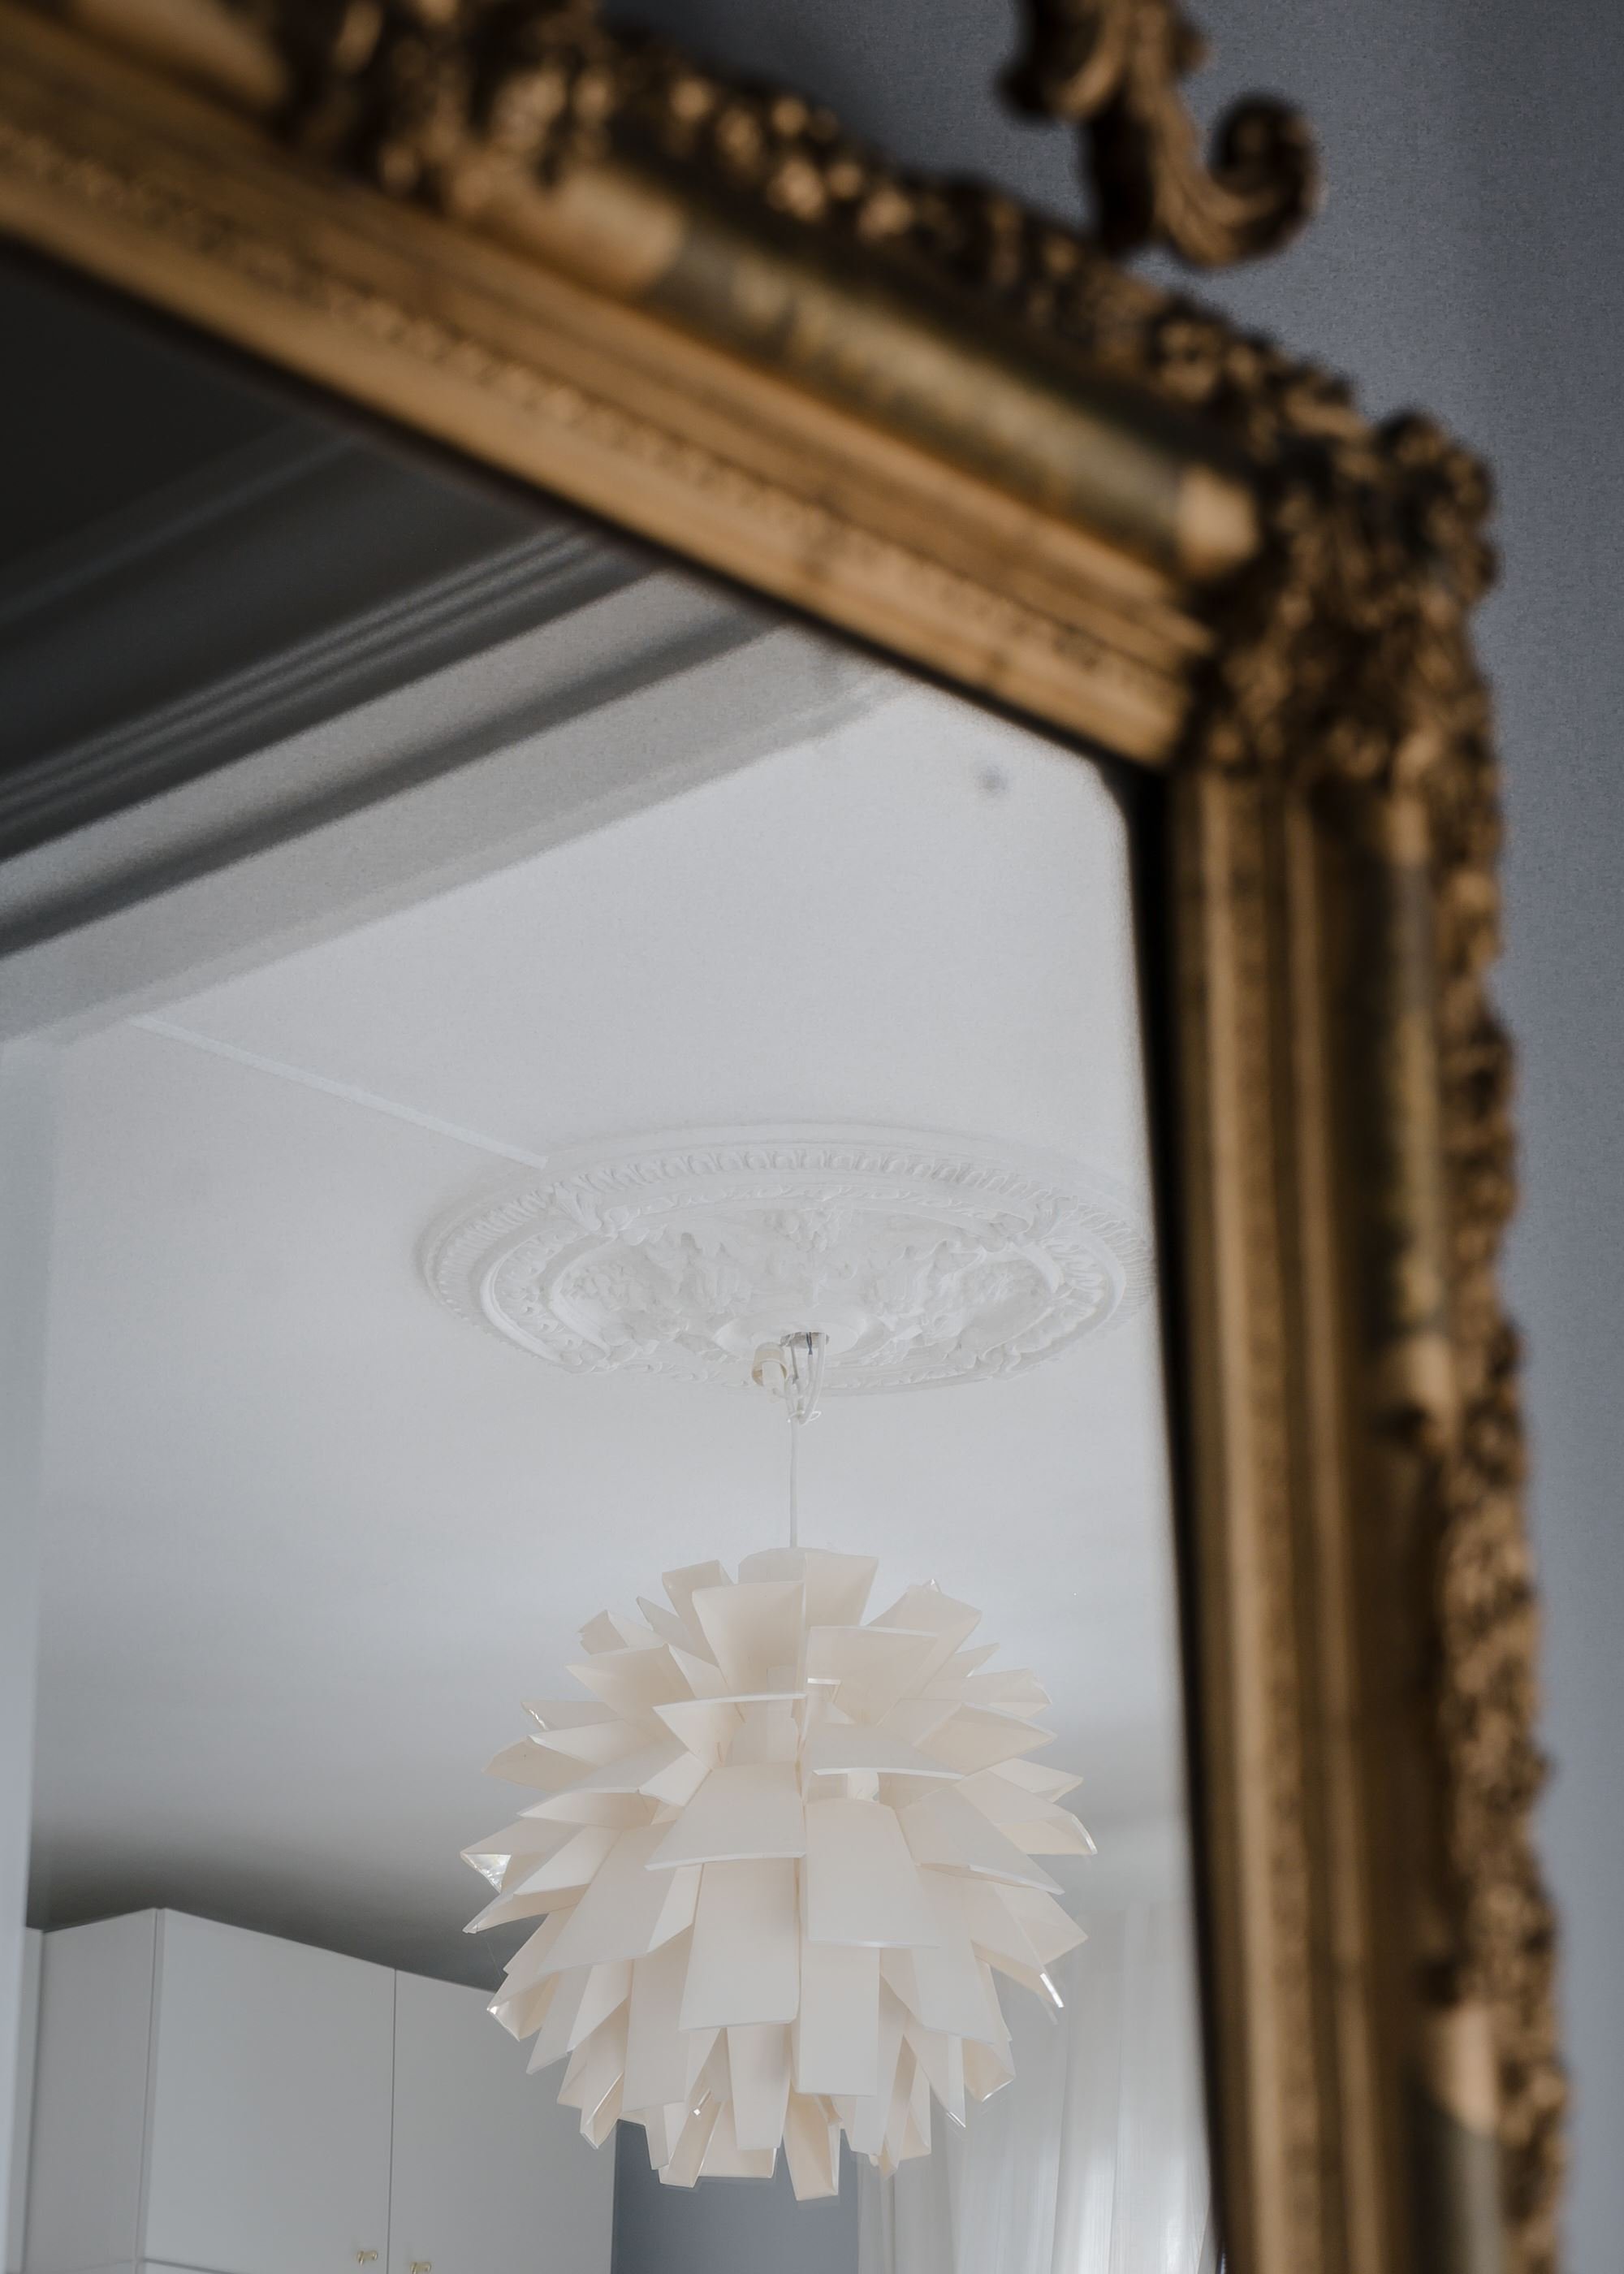 arredamento classico e moderno - chiccacasa - specchio classico dorato e lampadario moderno